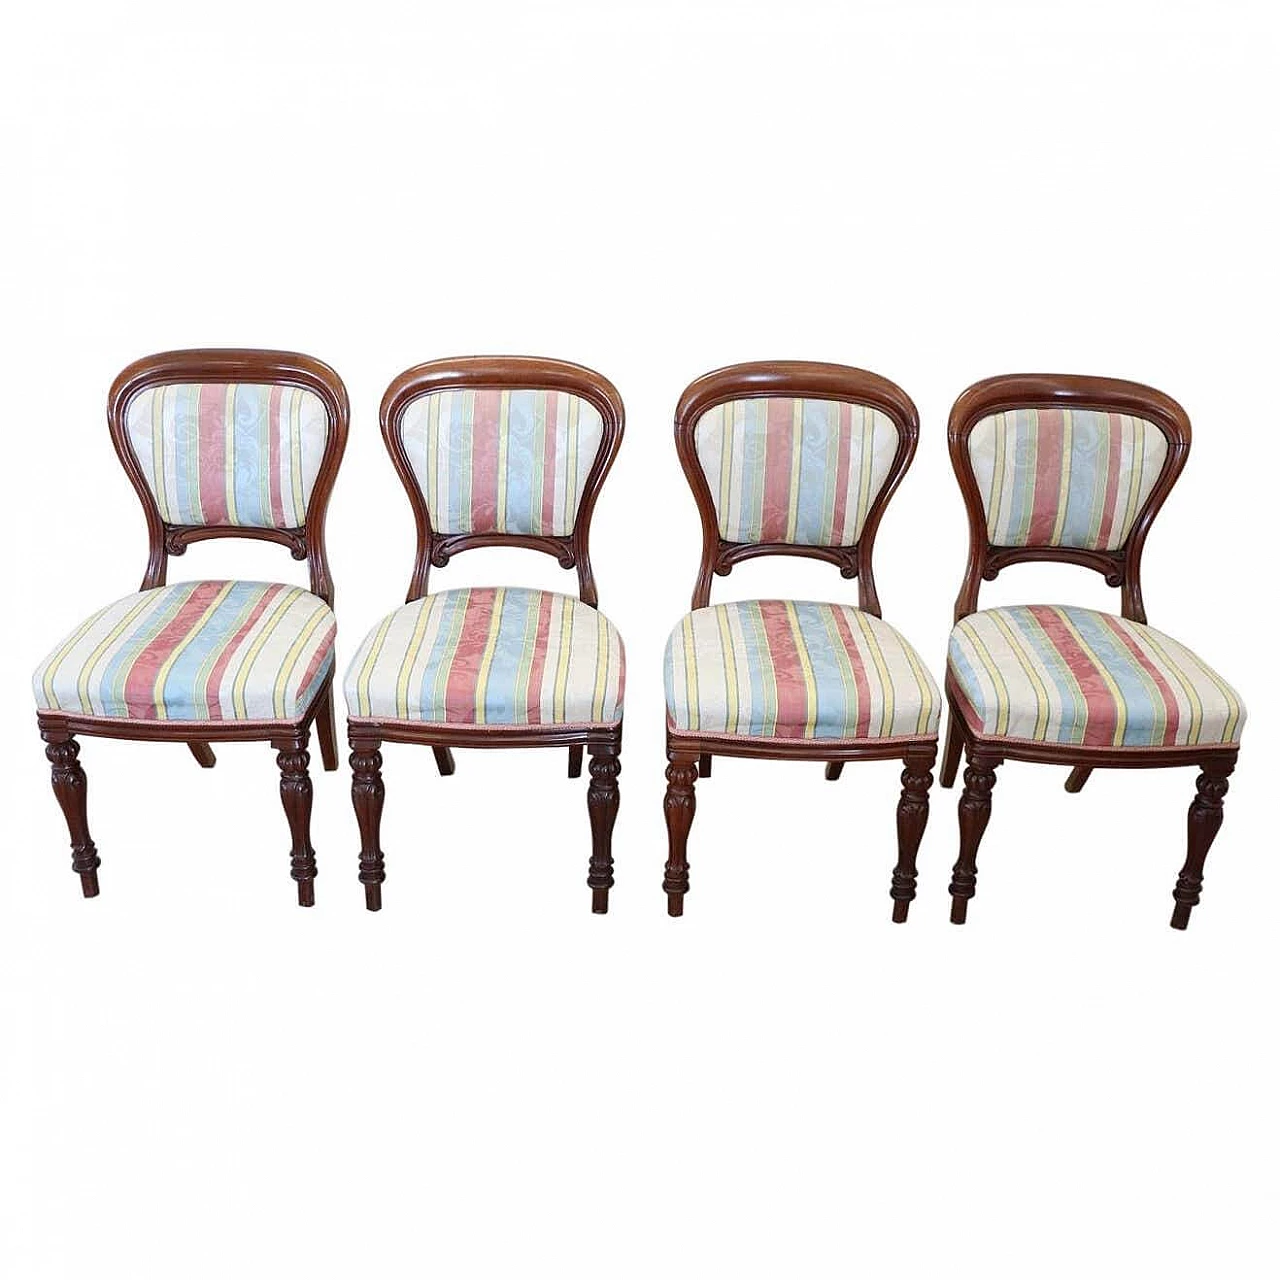 4 Mahogany dining chairs, mid 19th century 1311175